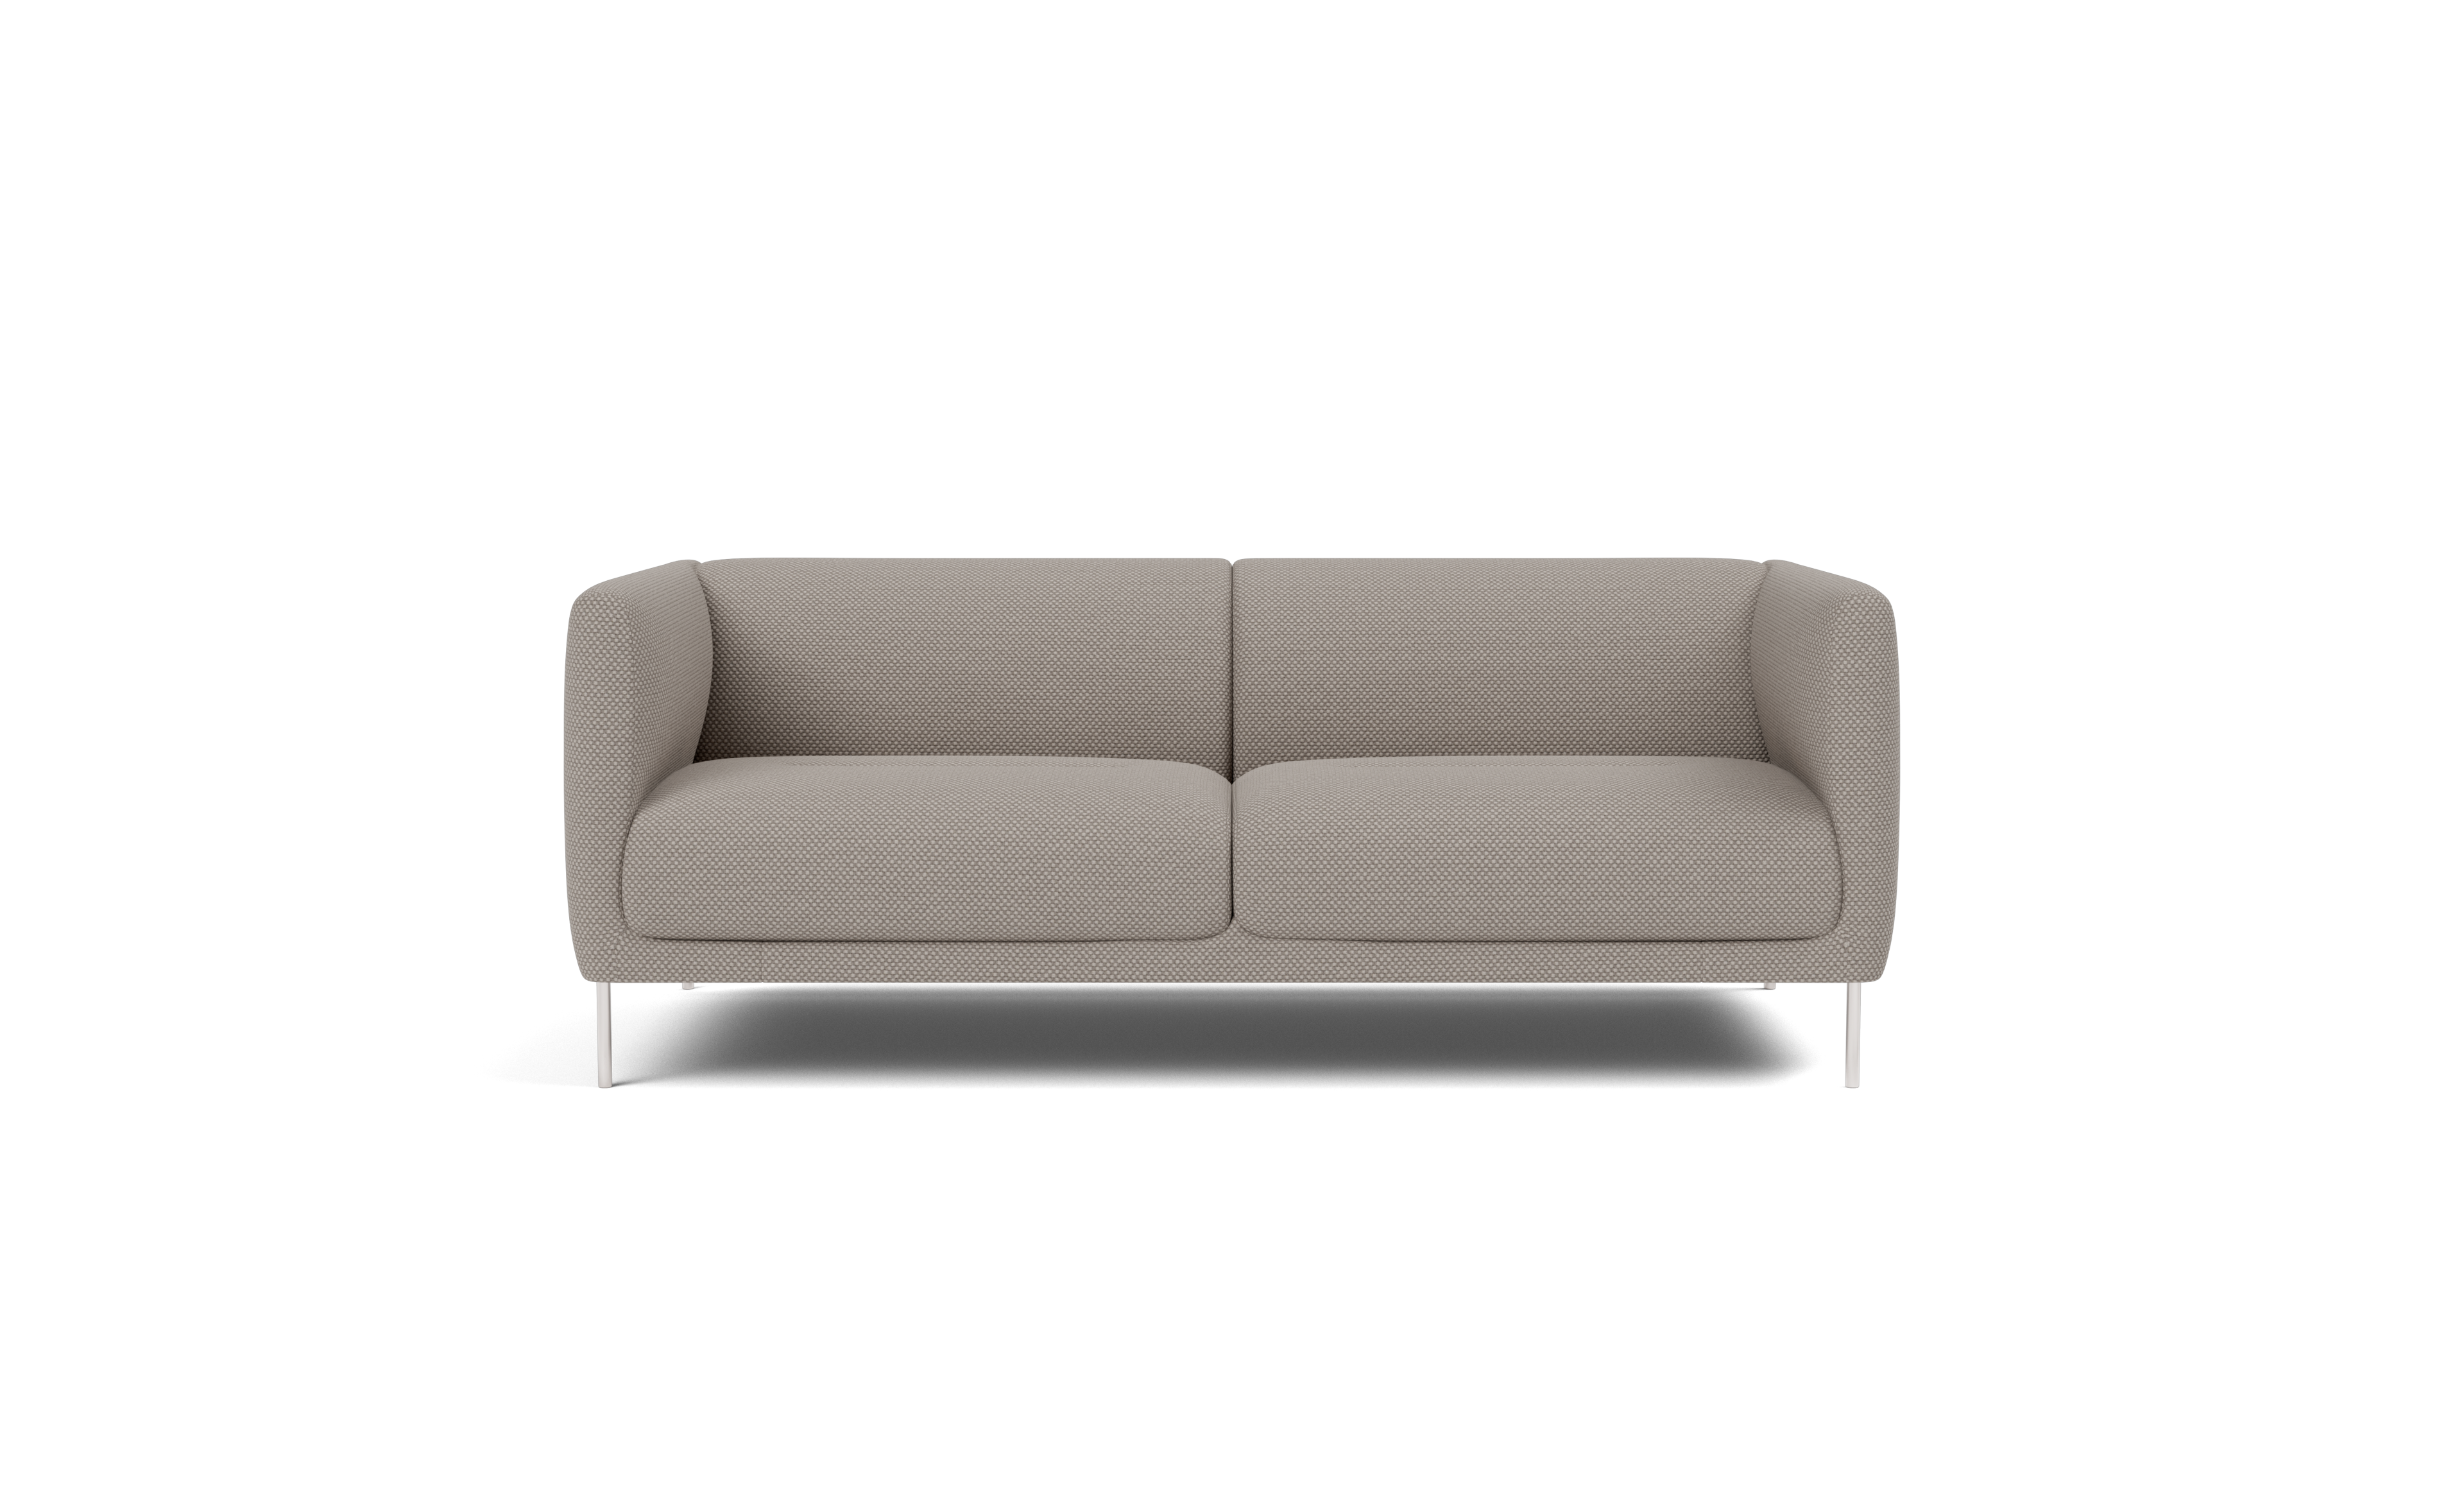 Damian Williamson - Konami Sofa, 2 seater